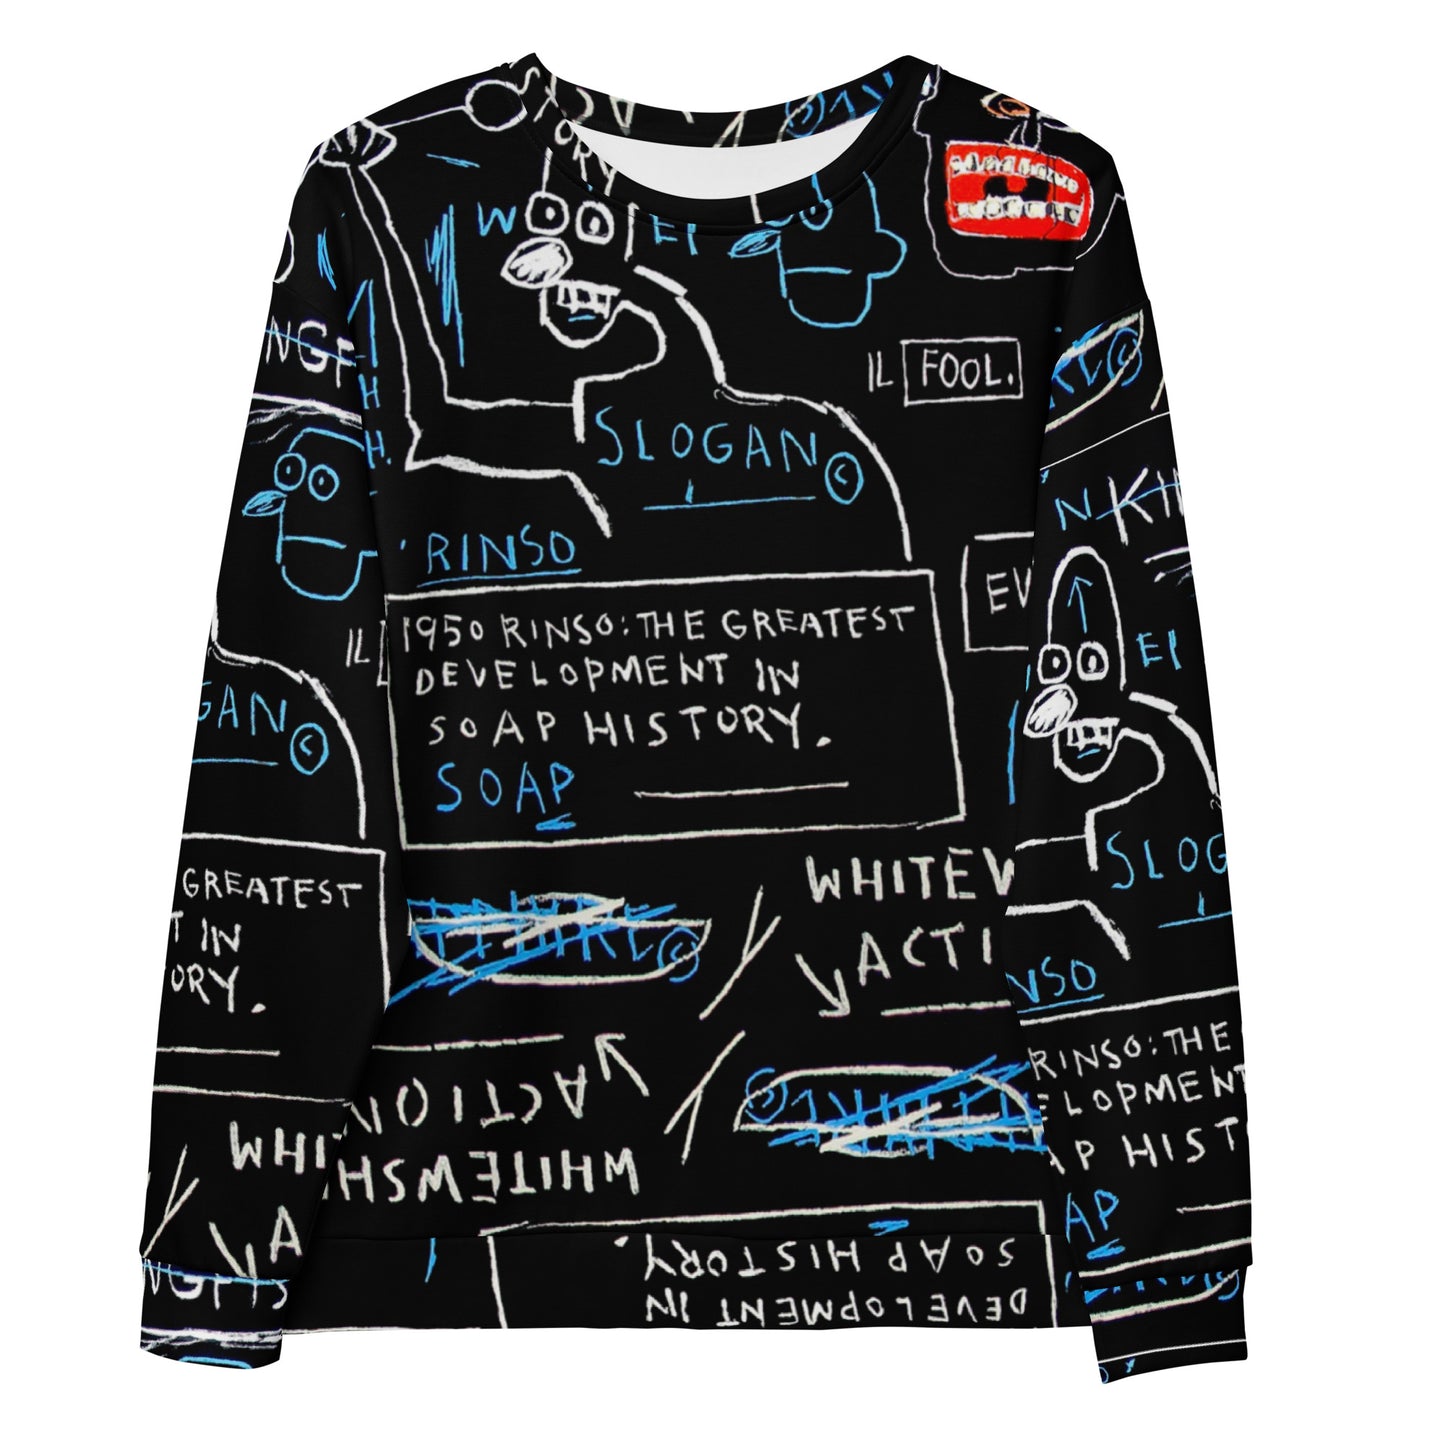 Jean-Michel Basquiat "Rinso" Artwork Printed Premium Streetwear Crewneck Sweatshirt Black Harajuku Graffiti